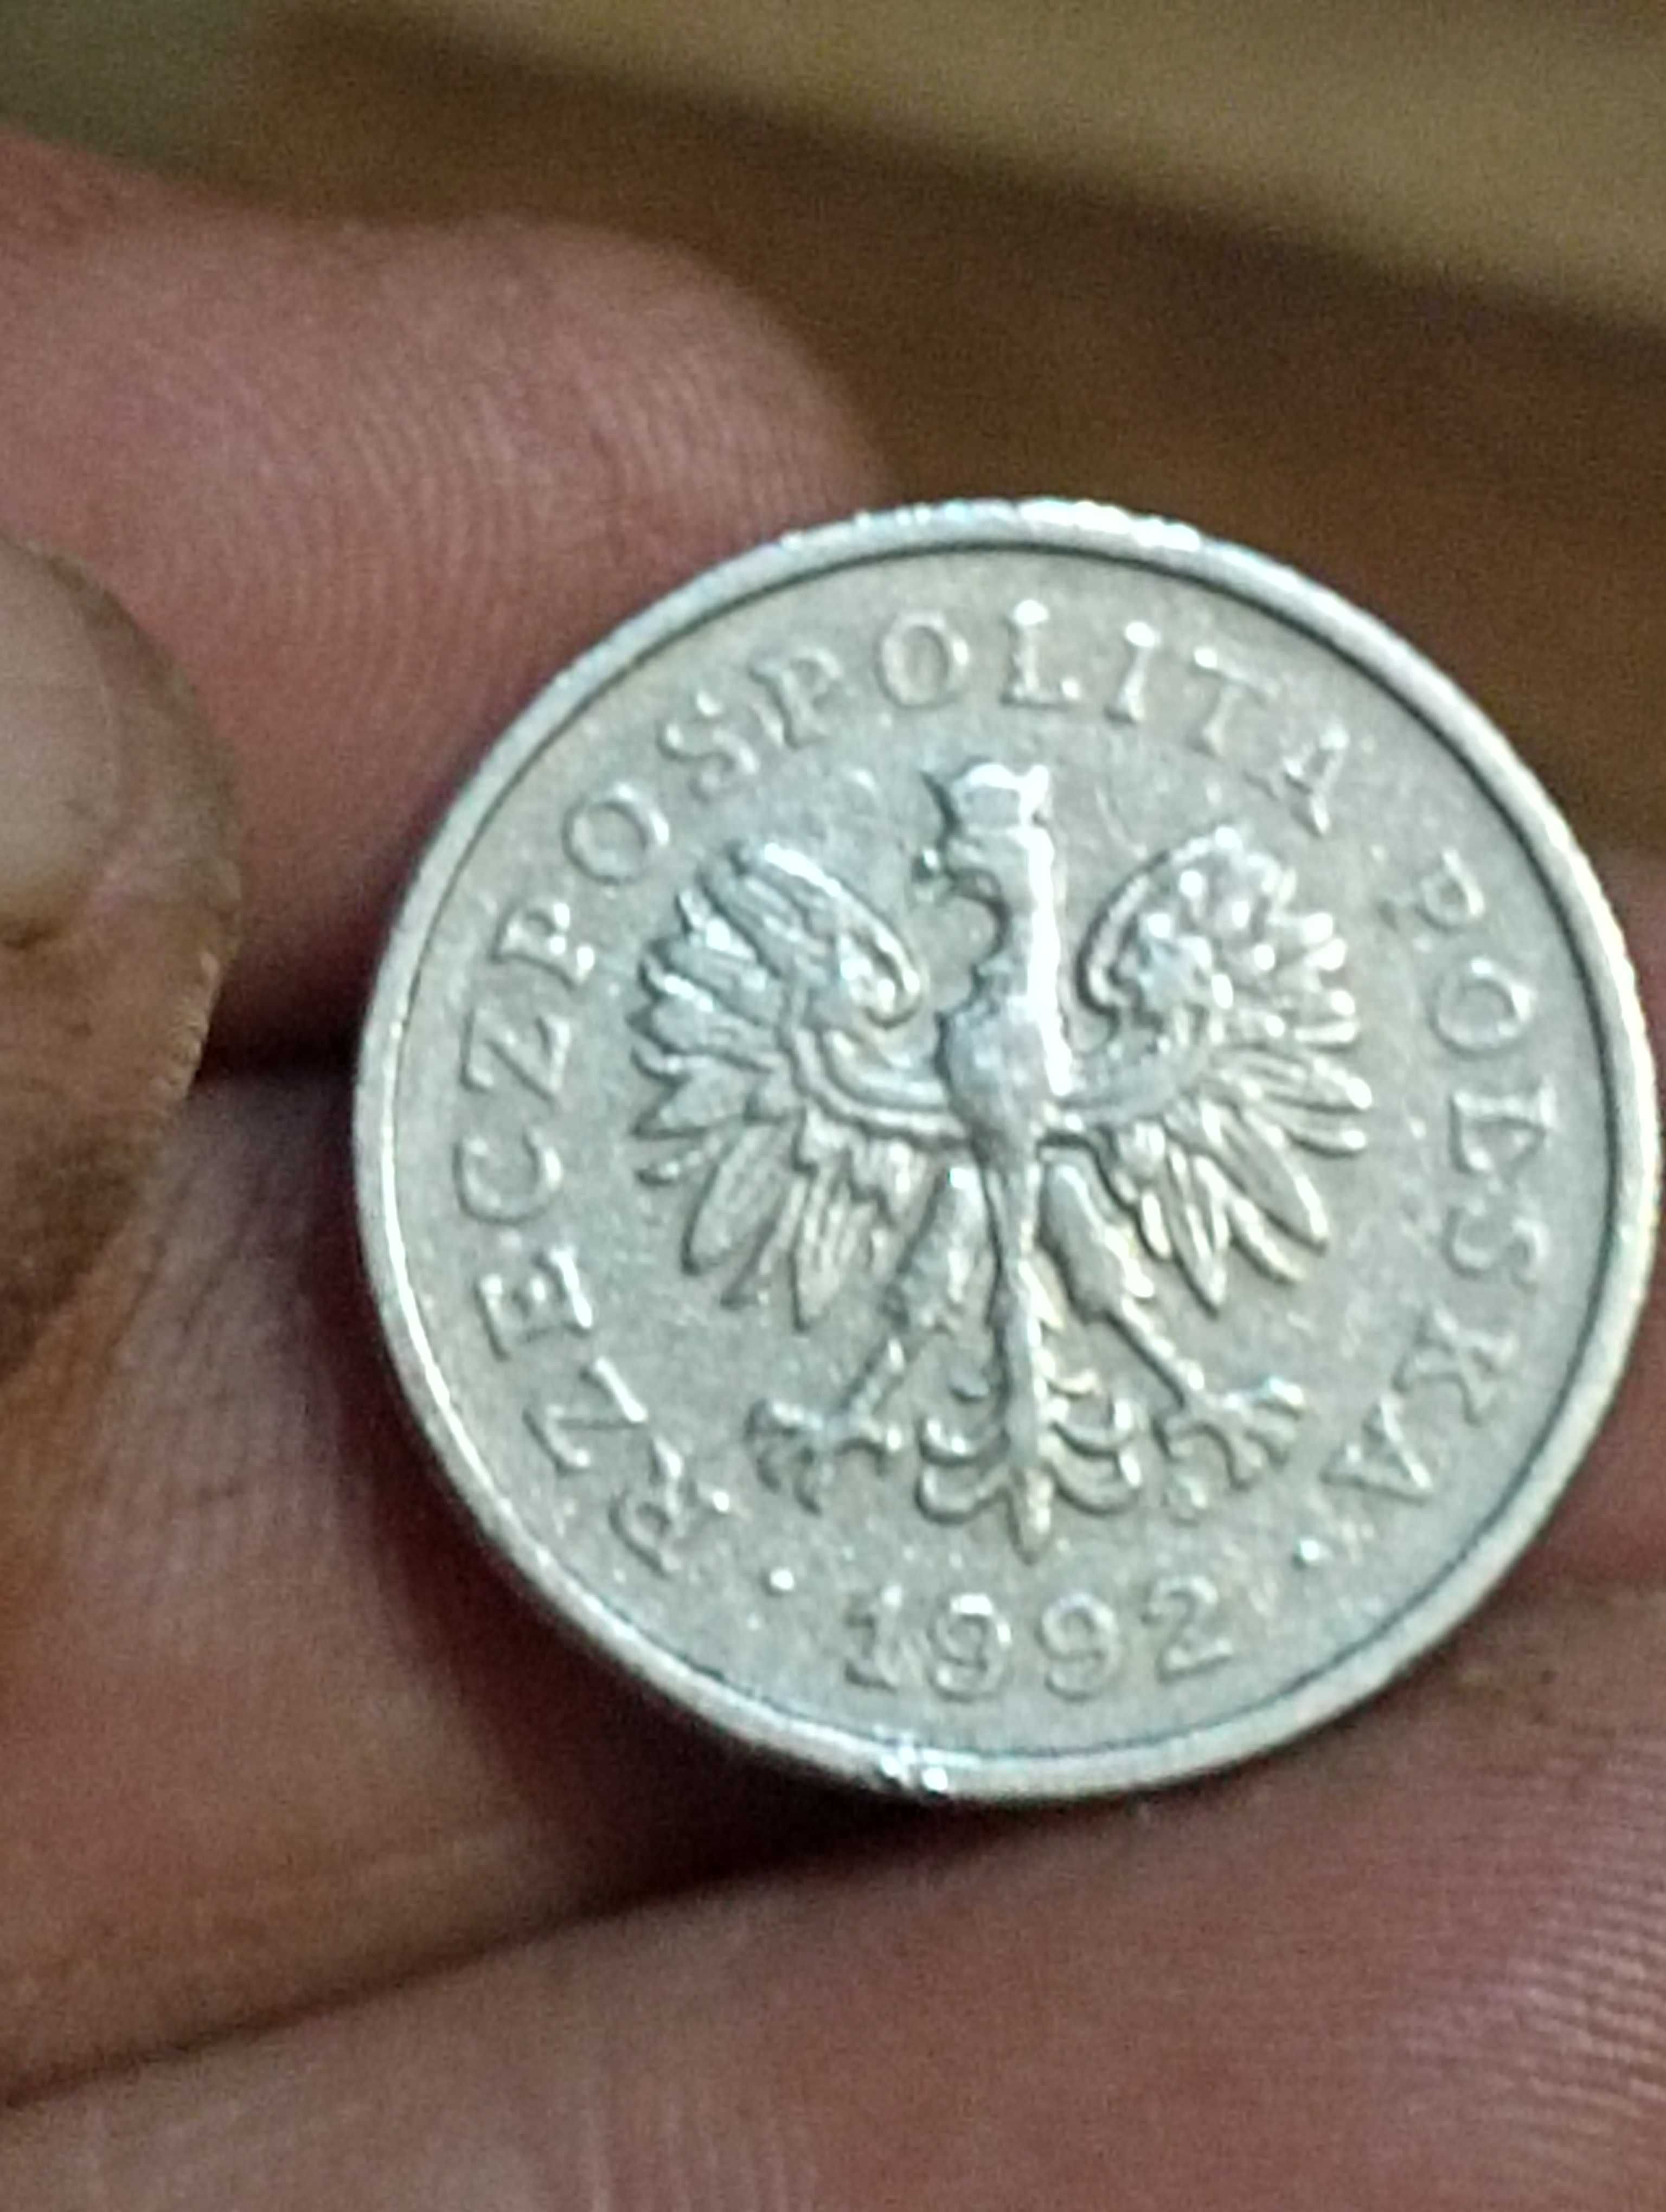 Sprzedam monete rrr 1 zloty 1992 rok